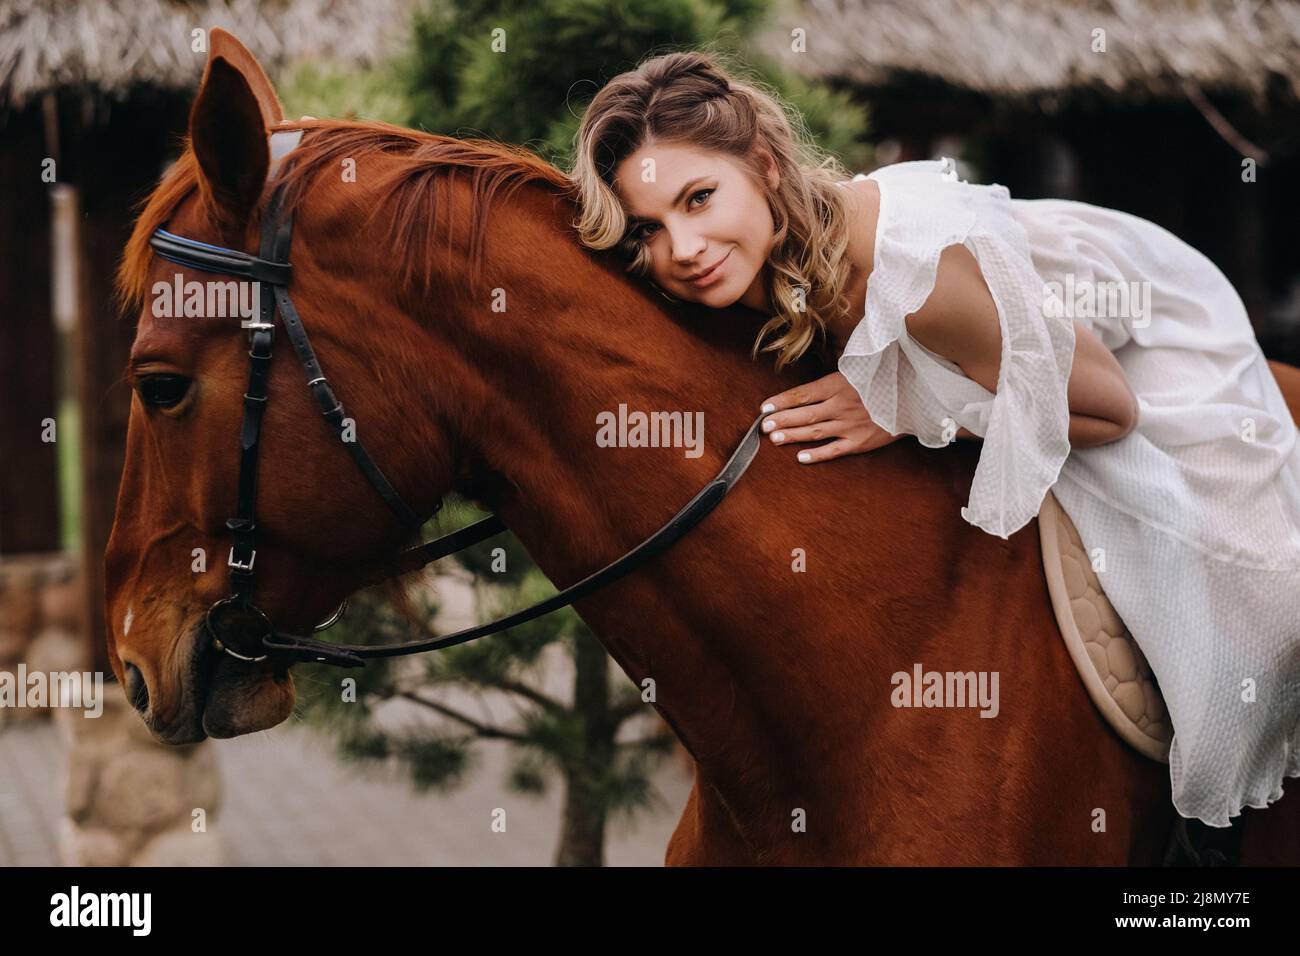 Une femme dans une sundress blanche à cheval près d'une ferme Banque D'Images